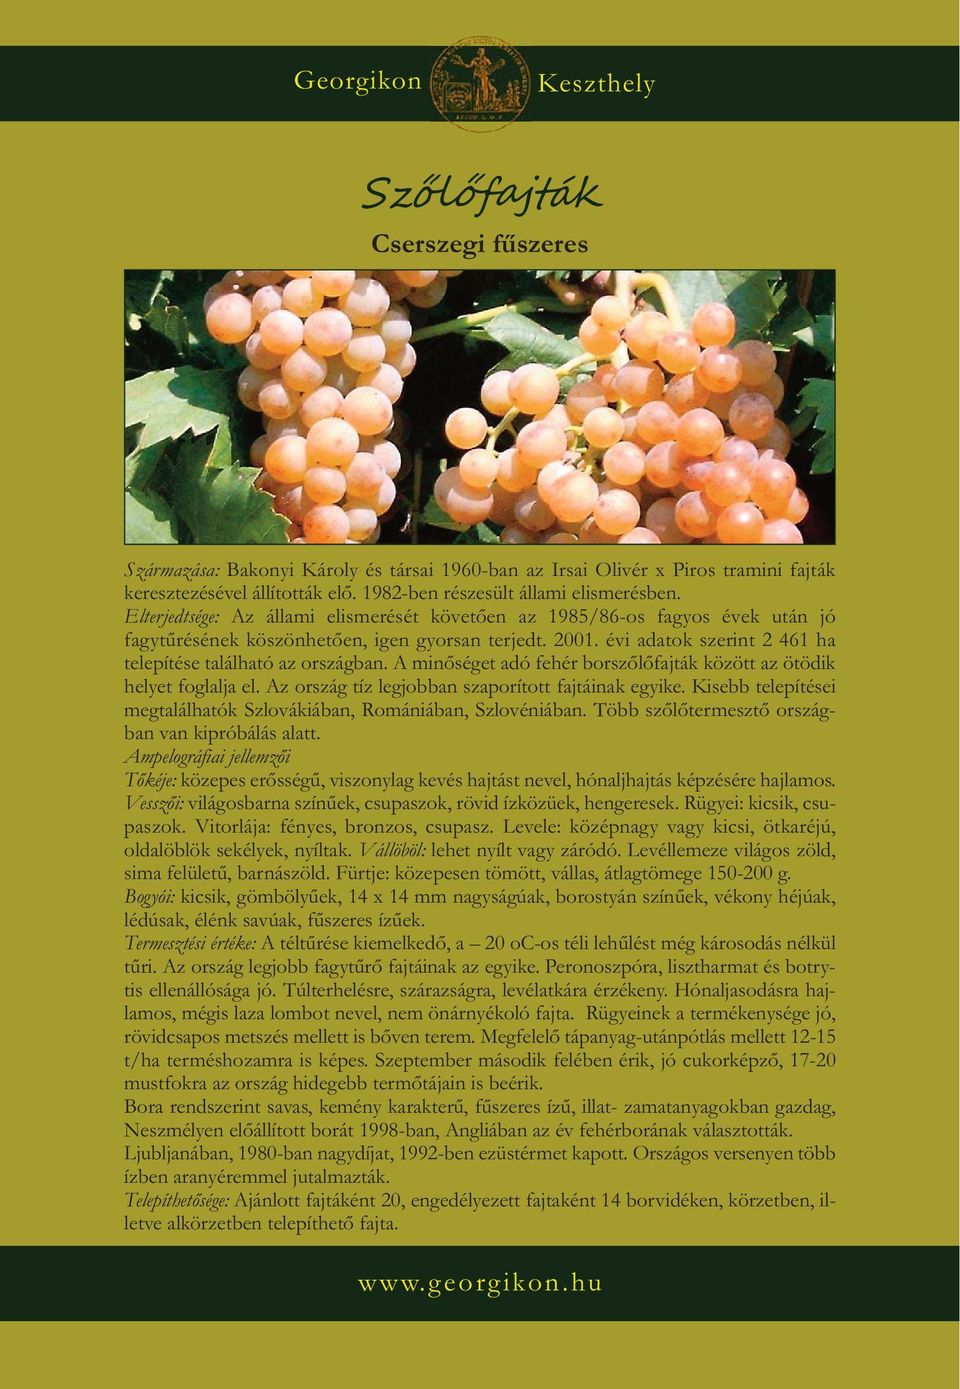 A minőséget adó fehér borszőlőfajták között az ötödik helyet foglalja el. Az ország tíz legjobban szaporított fajtáinak egyike. Kisebb telepítései megtalálhatók Szlovákiában, Romániában, Szlovéniában.